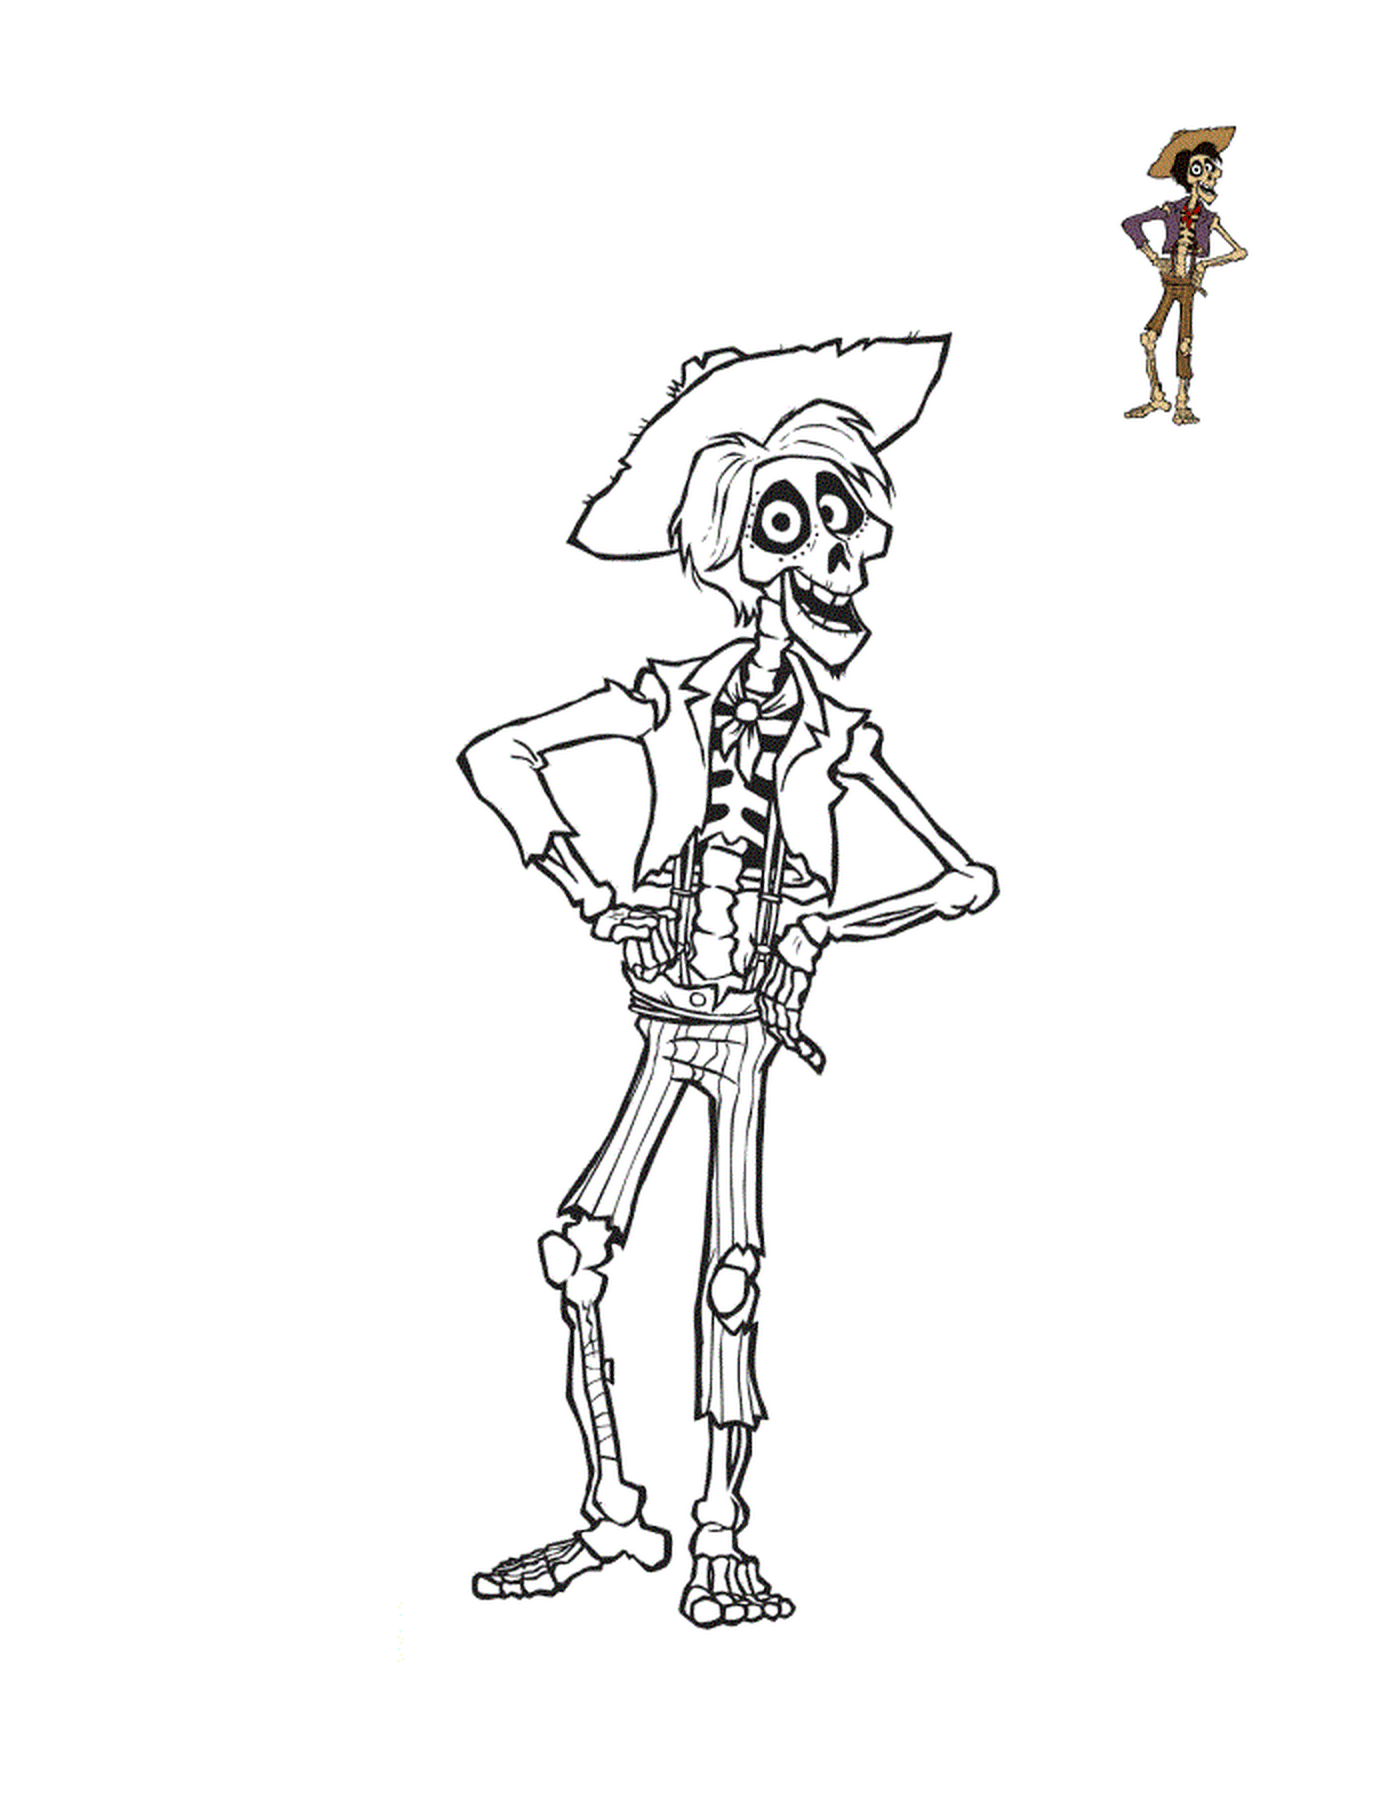  Гектор, тонкий скелет с черными волосами и барбишеттой, и пурпурные глаза 